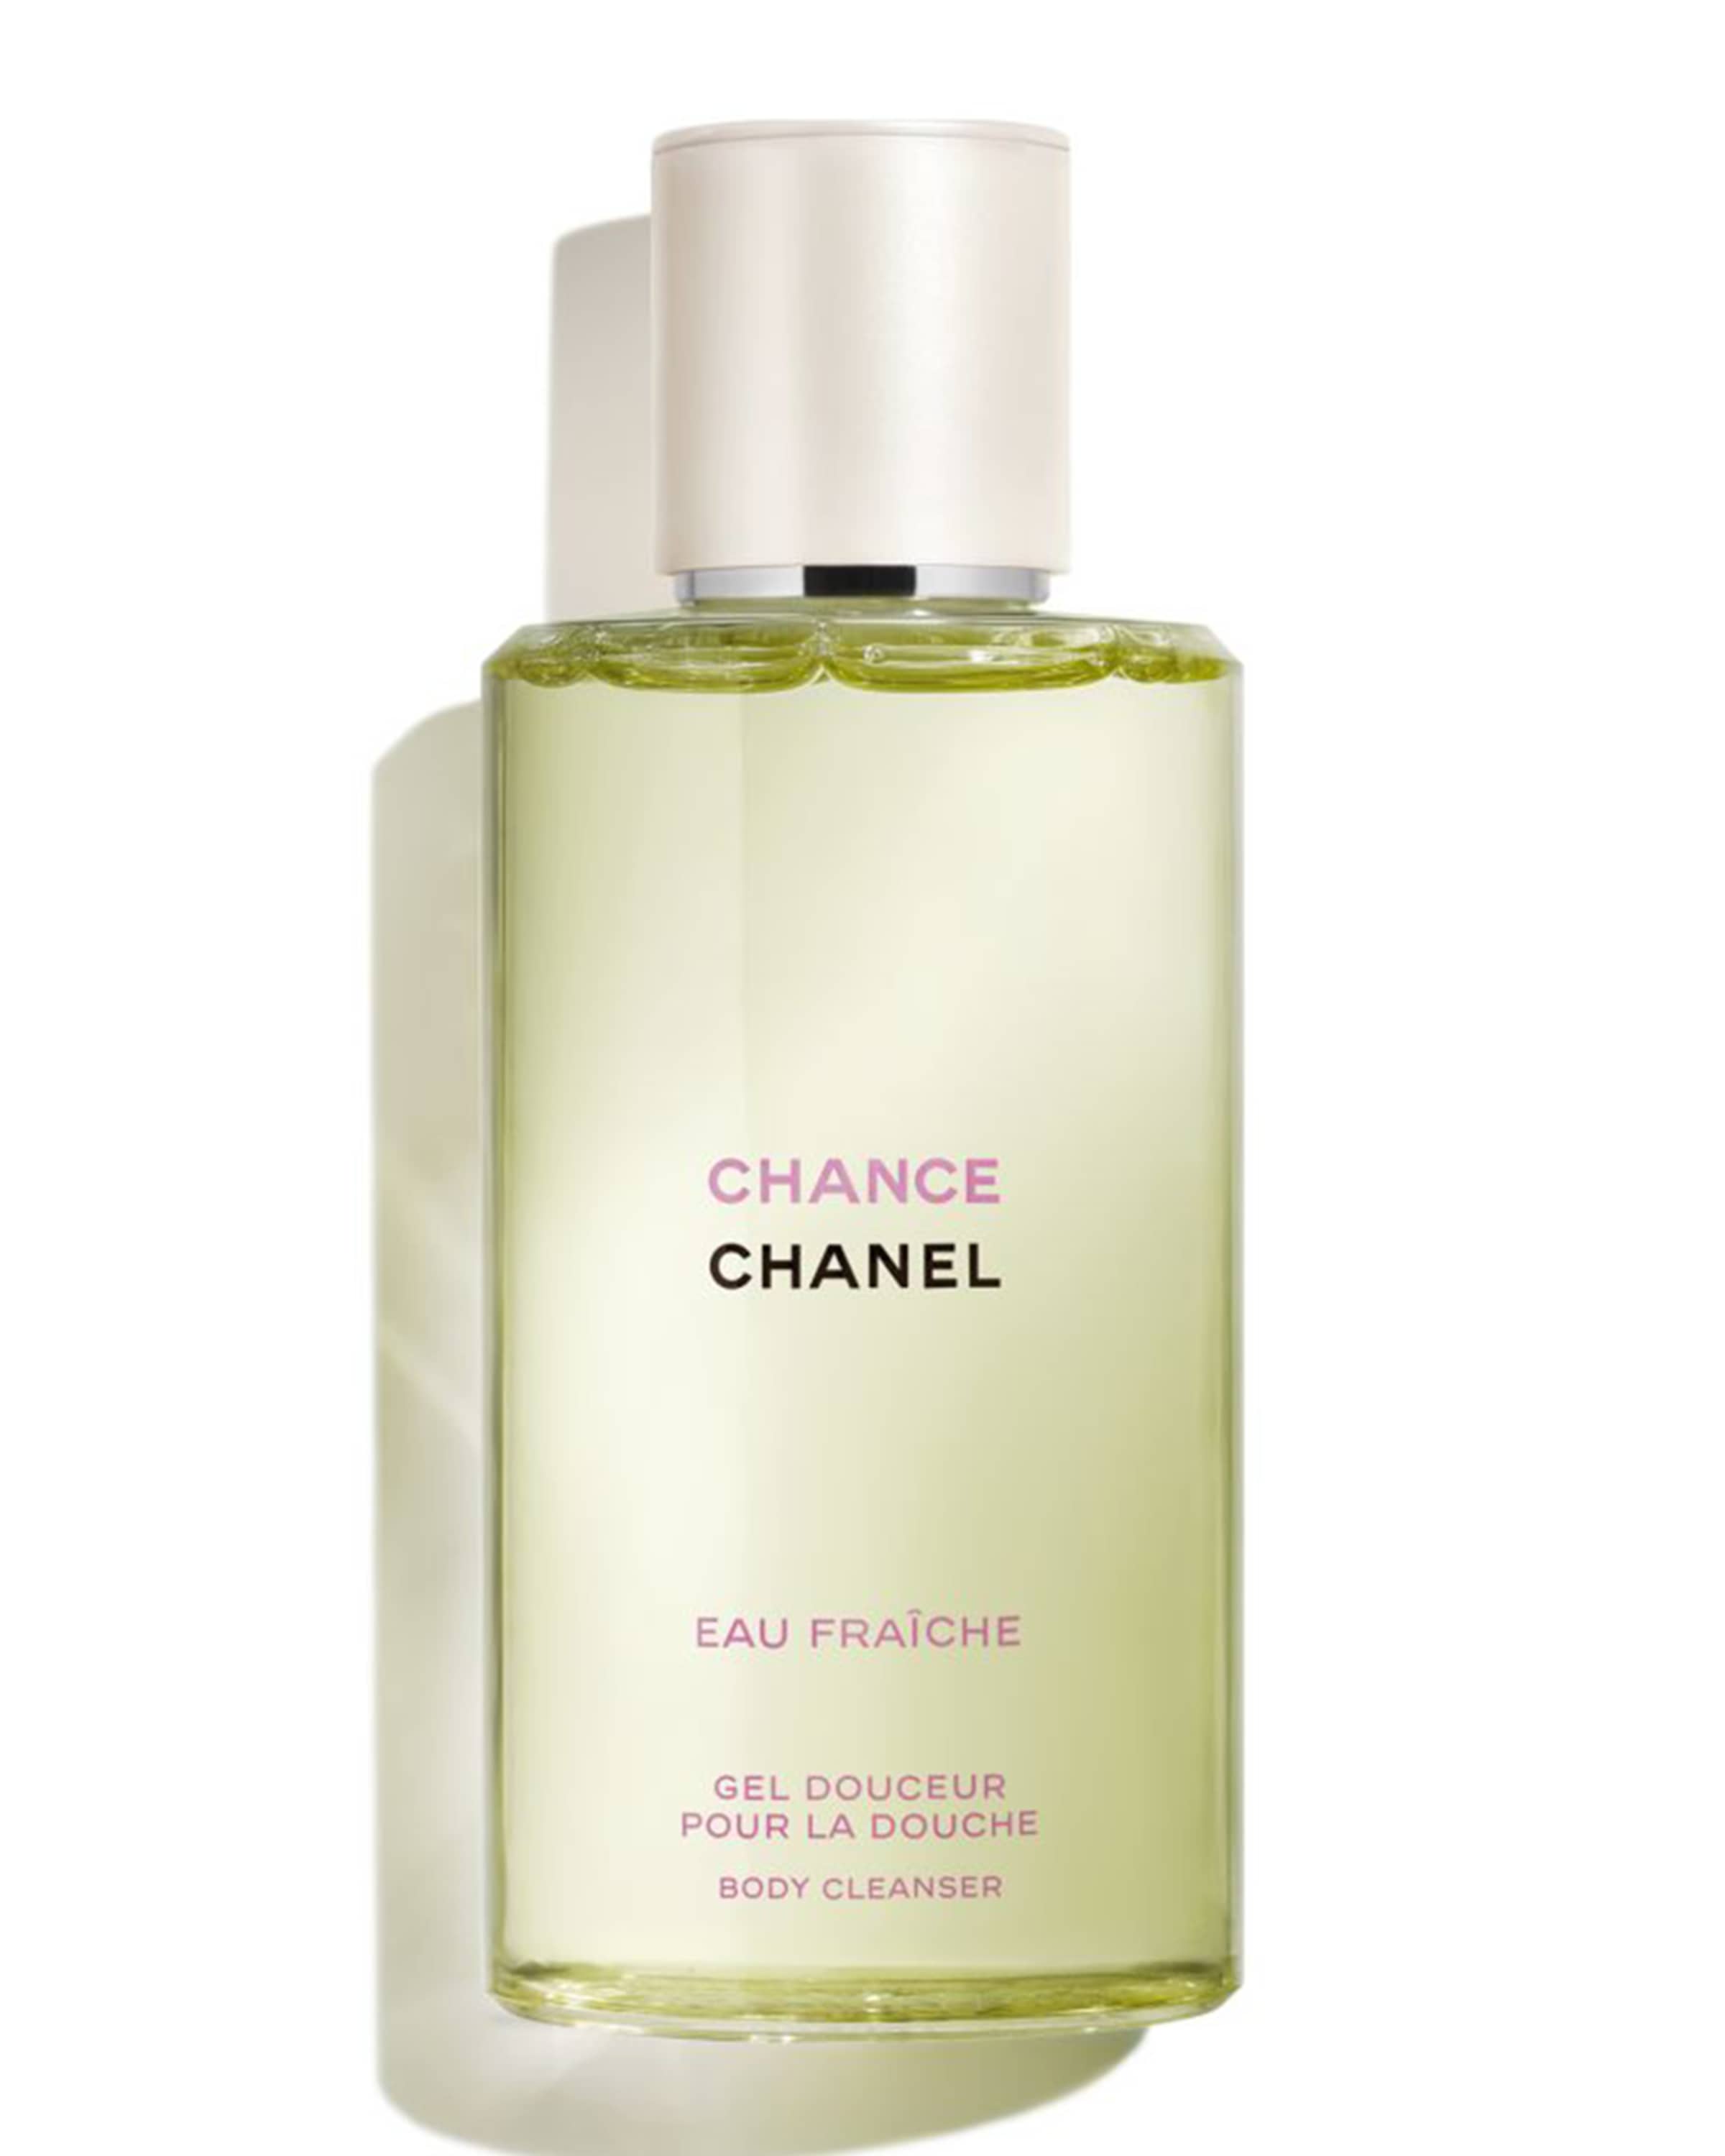 CHANEL CHANCE EAU FRAÎCHE Body Cleanser,  oz./ 200 mL | Neiman Marcus